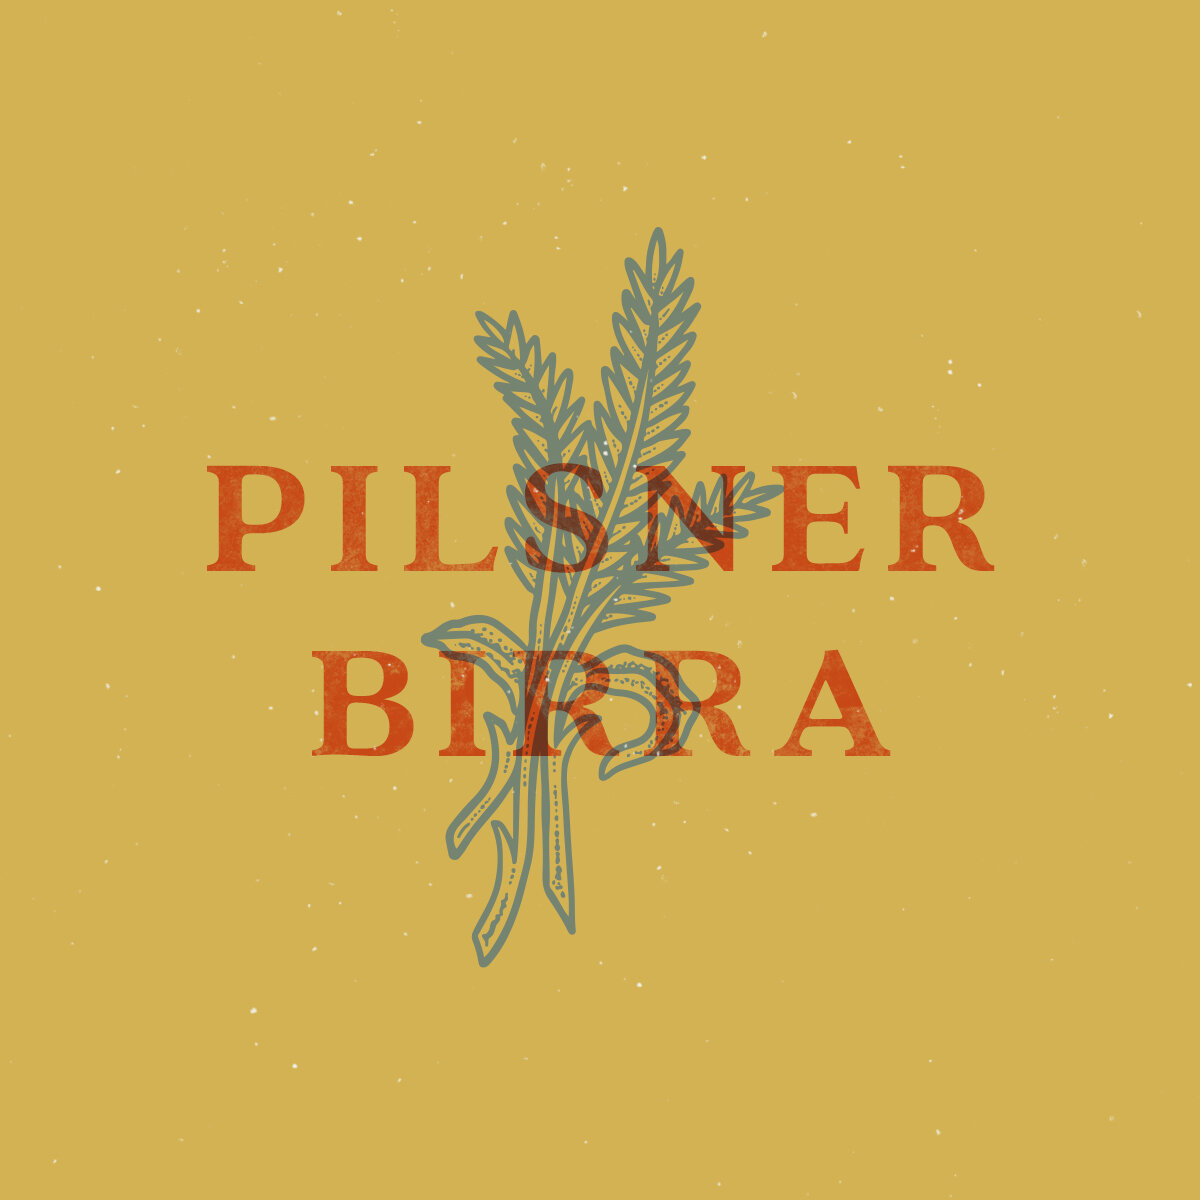 Pilsner Birra